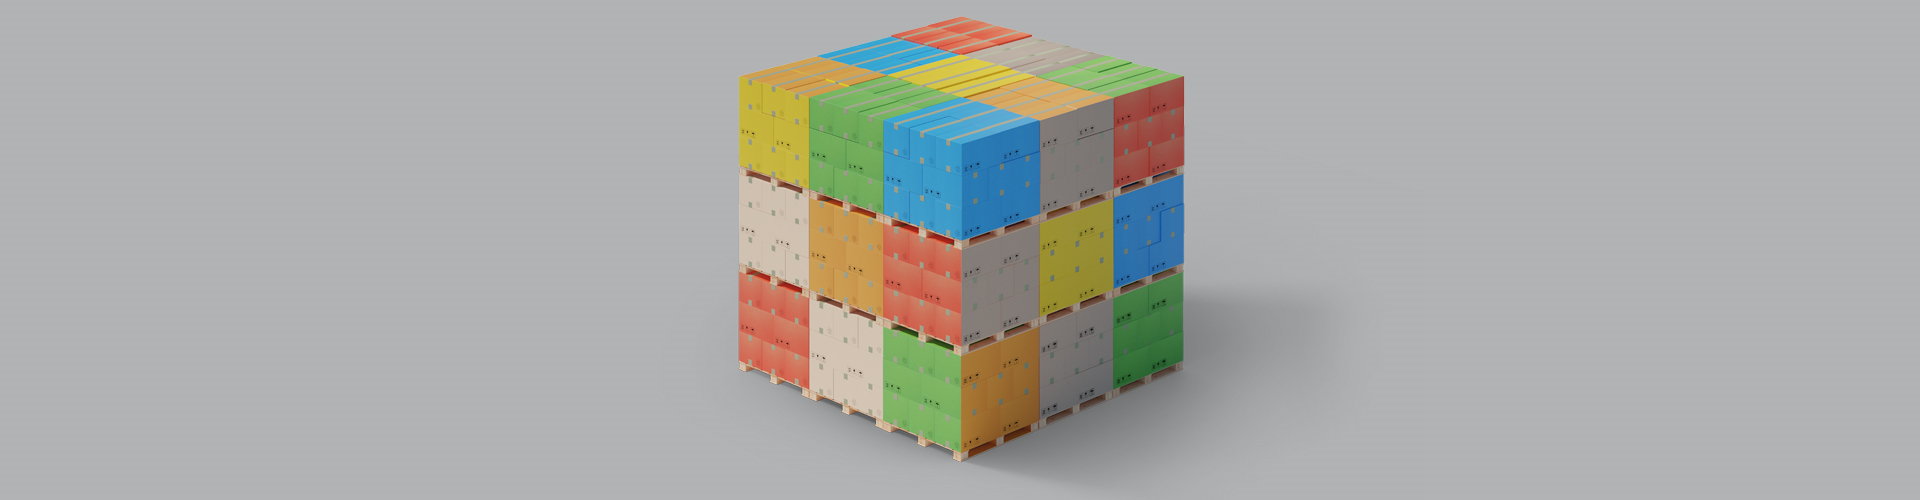 rubik's cube logistik